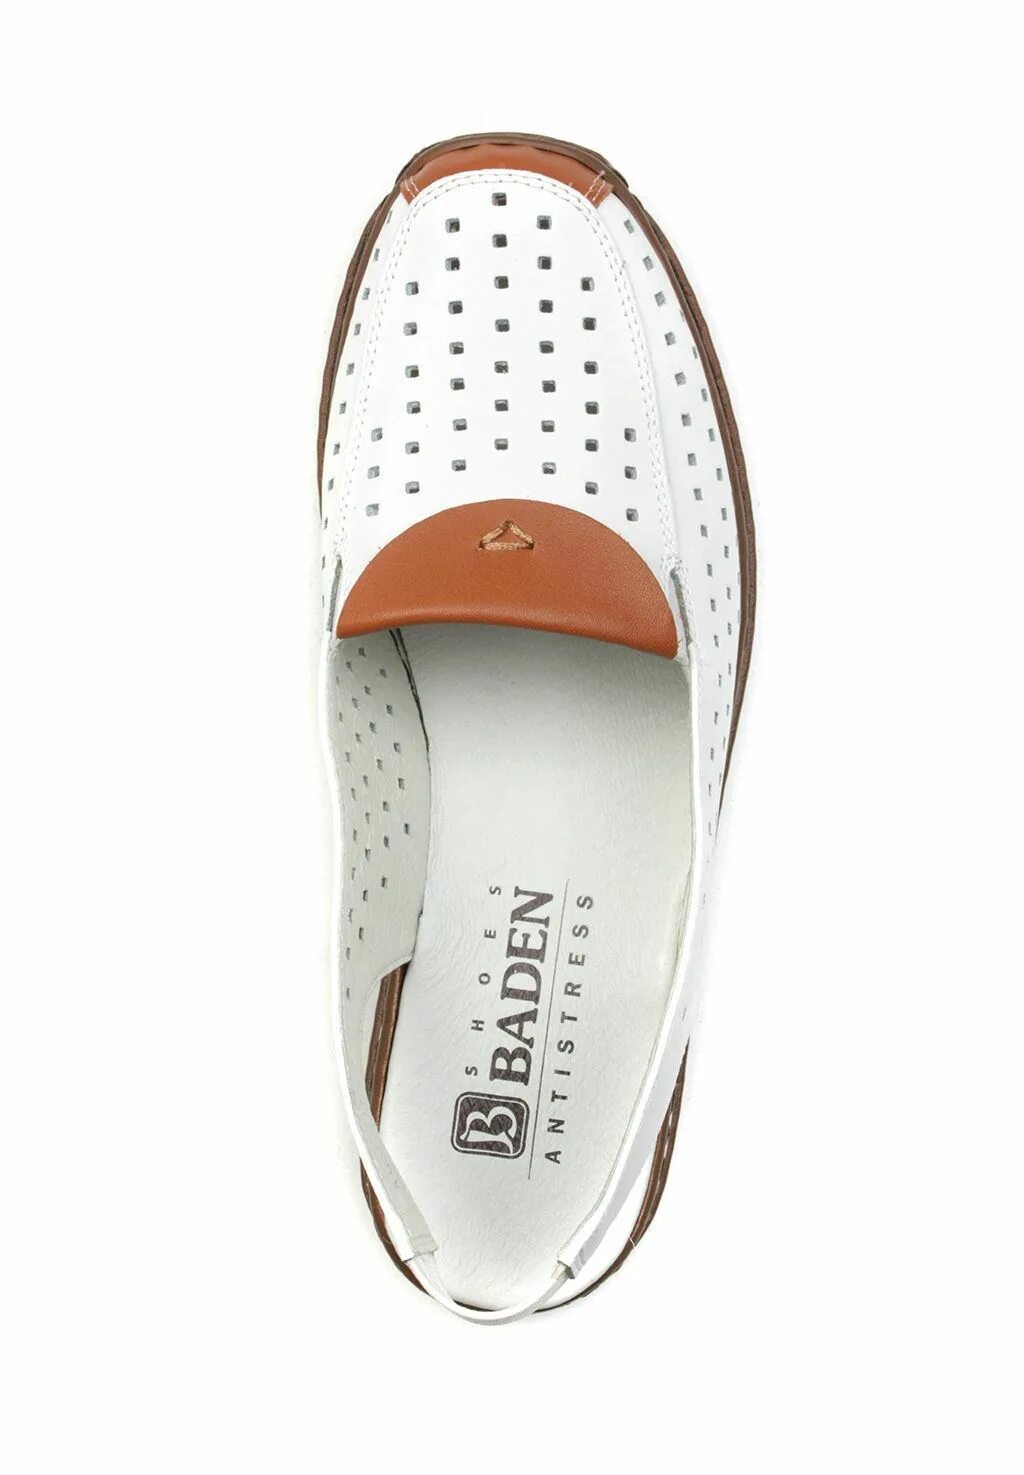 Active Baden обувь 2603l. Shoes Baden Баден производитель обувь. Туфли летние Баден 09854. Туфли Baden bf069-020.